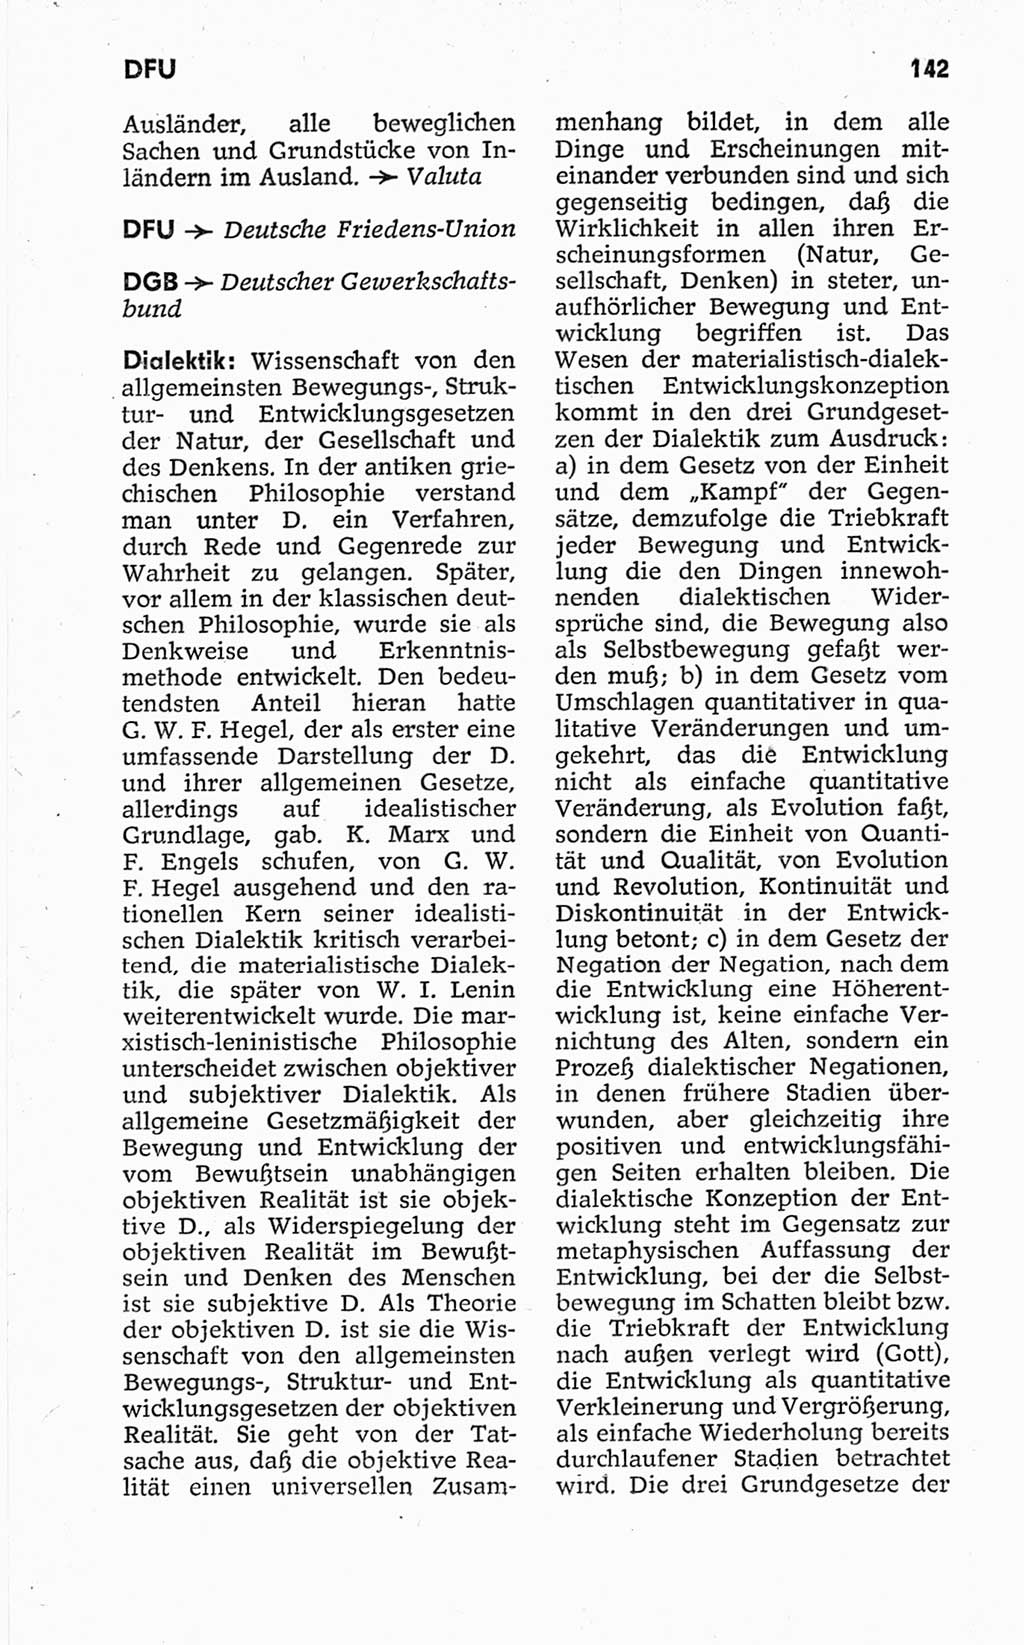 Kleines politisches Wörterbuch [Deutsche Demokratische Republik (DDR)] 1967, Seite 142 (Kl. pol. Wb. DDR 1967, S. 142)